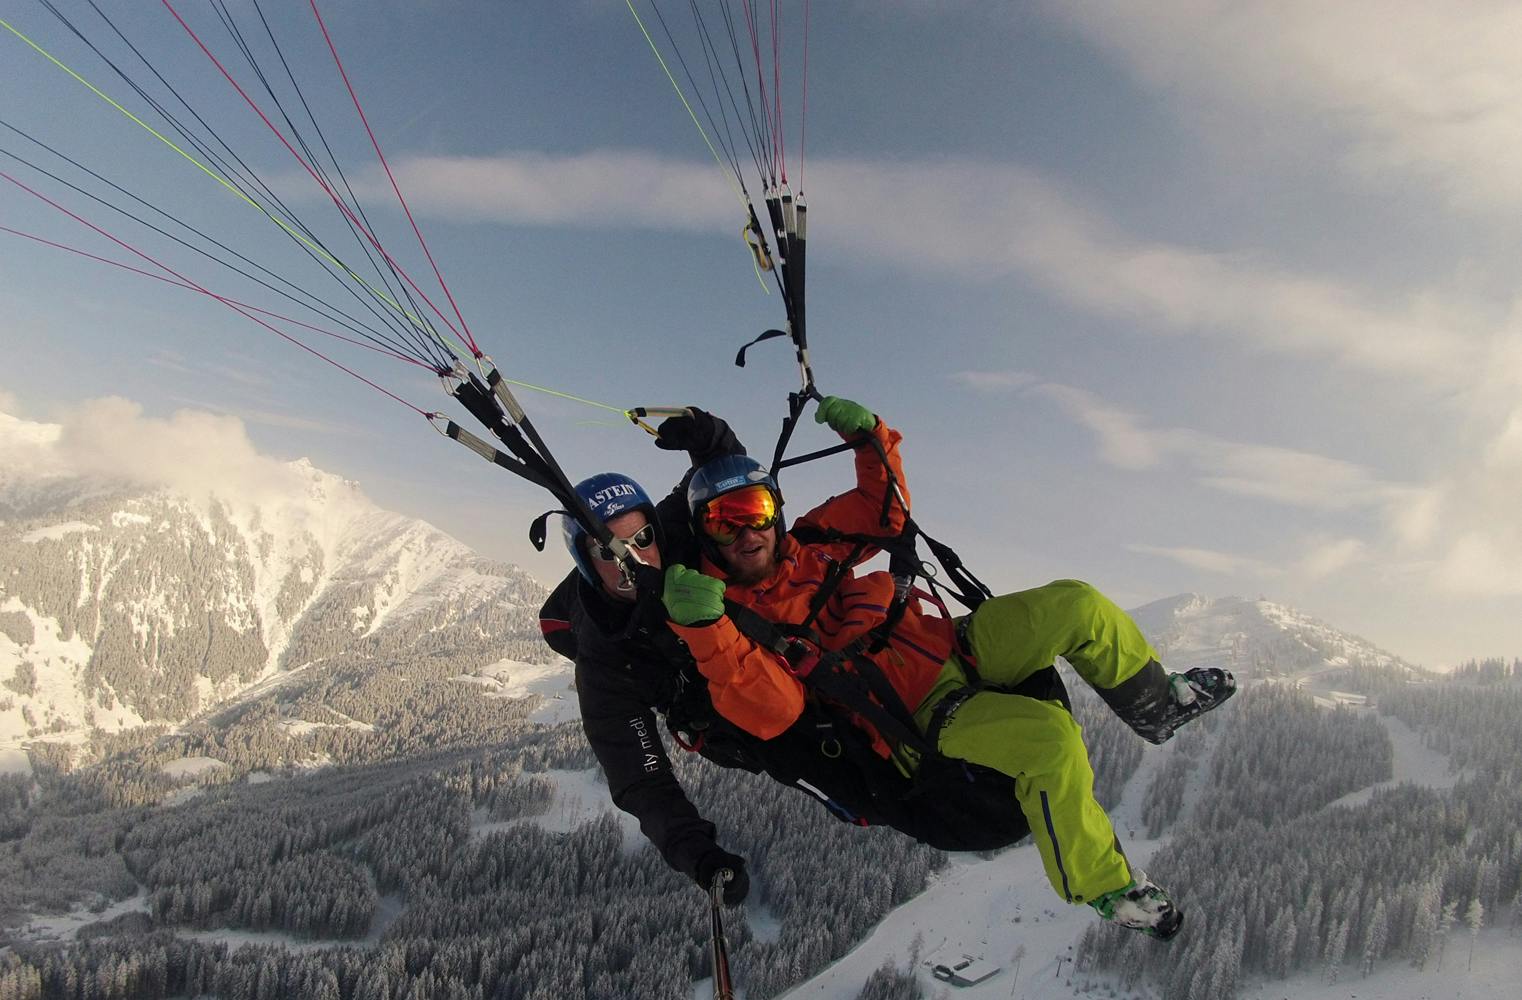 Gleitschirm-Höhenflug | bis zu 1400 hm inkl. Fotos & Video